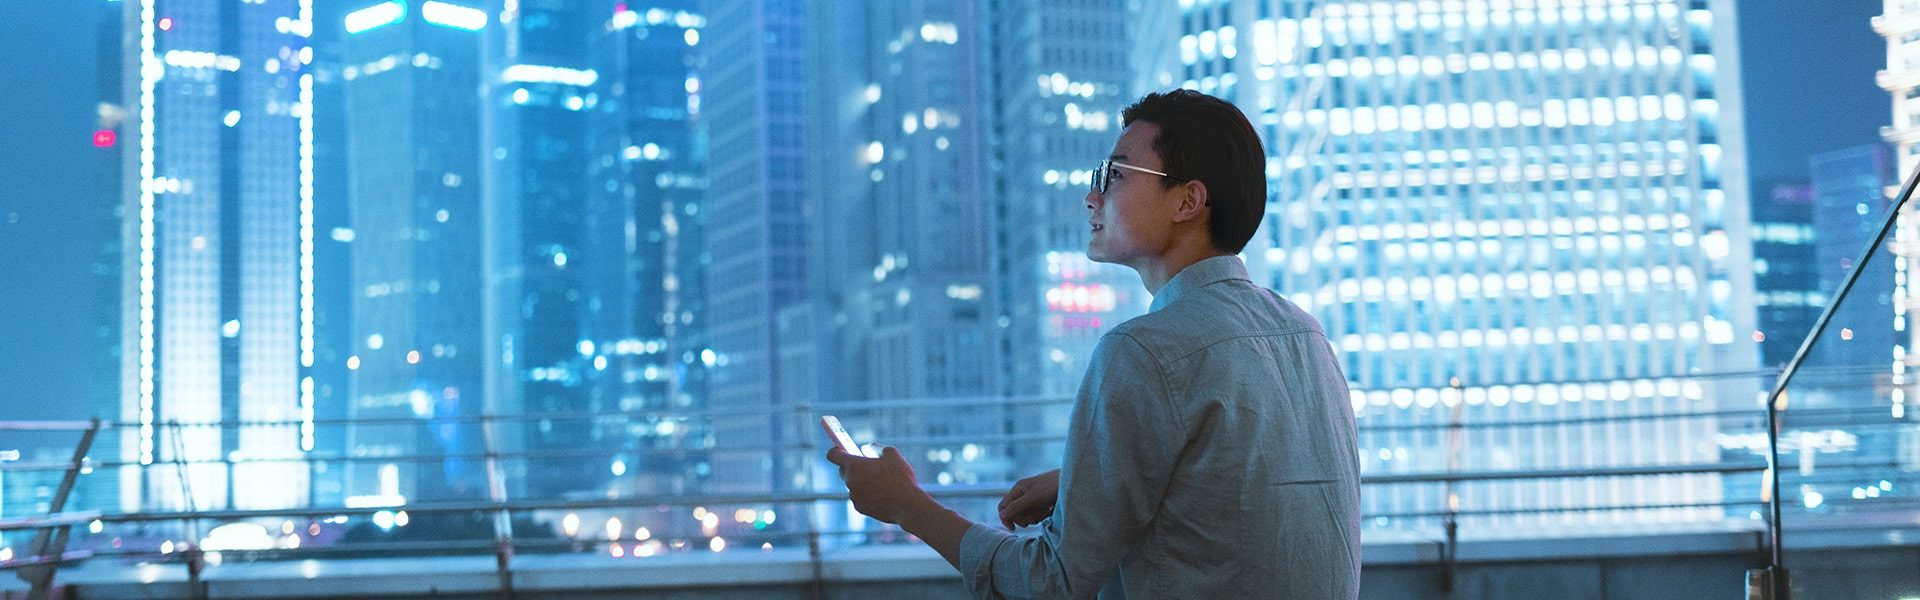 Jeune homme regardant son smartphone sur le toit d'un immeuble en ville la nuit